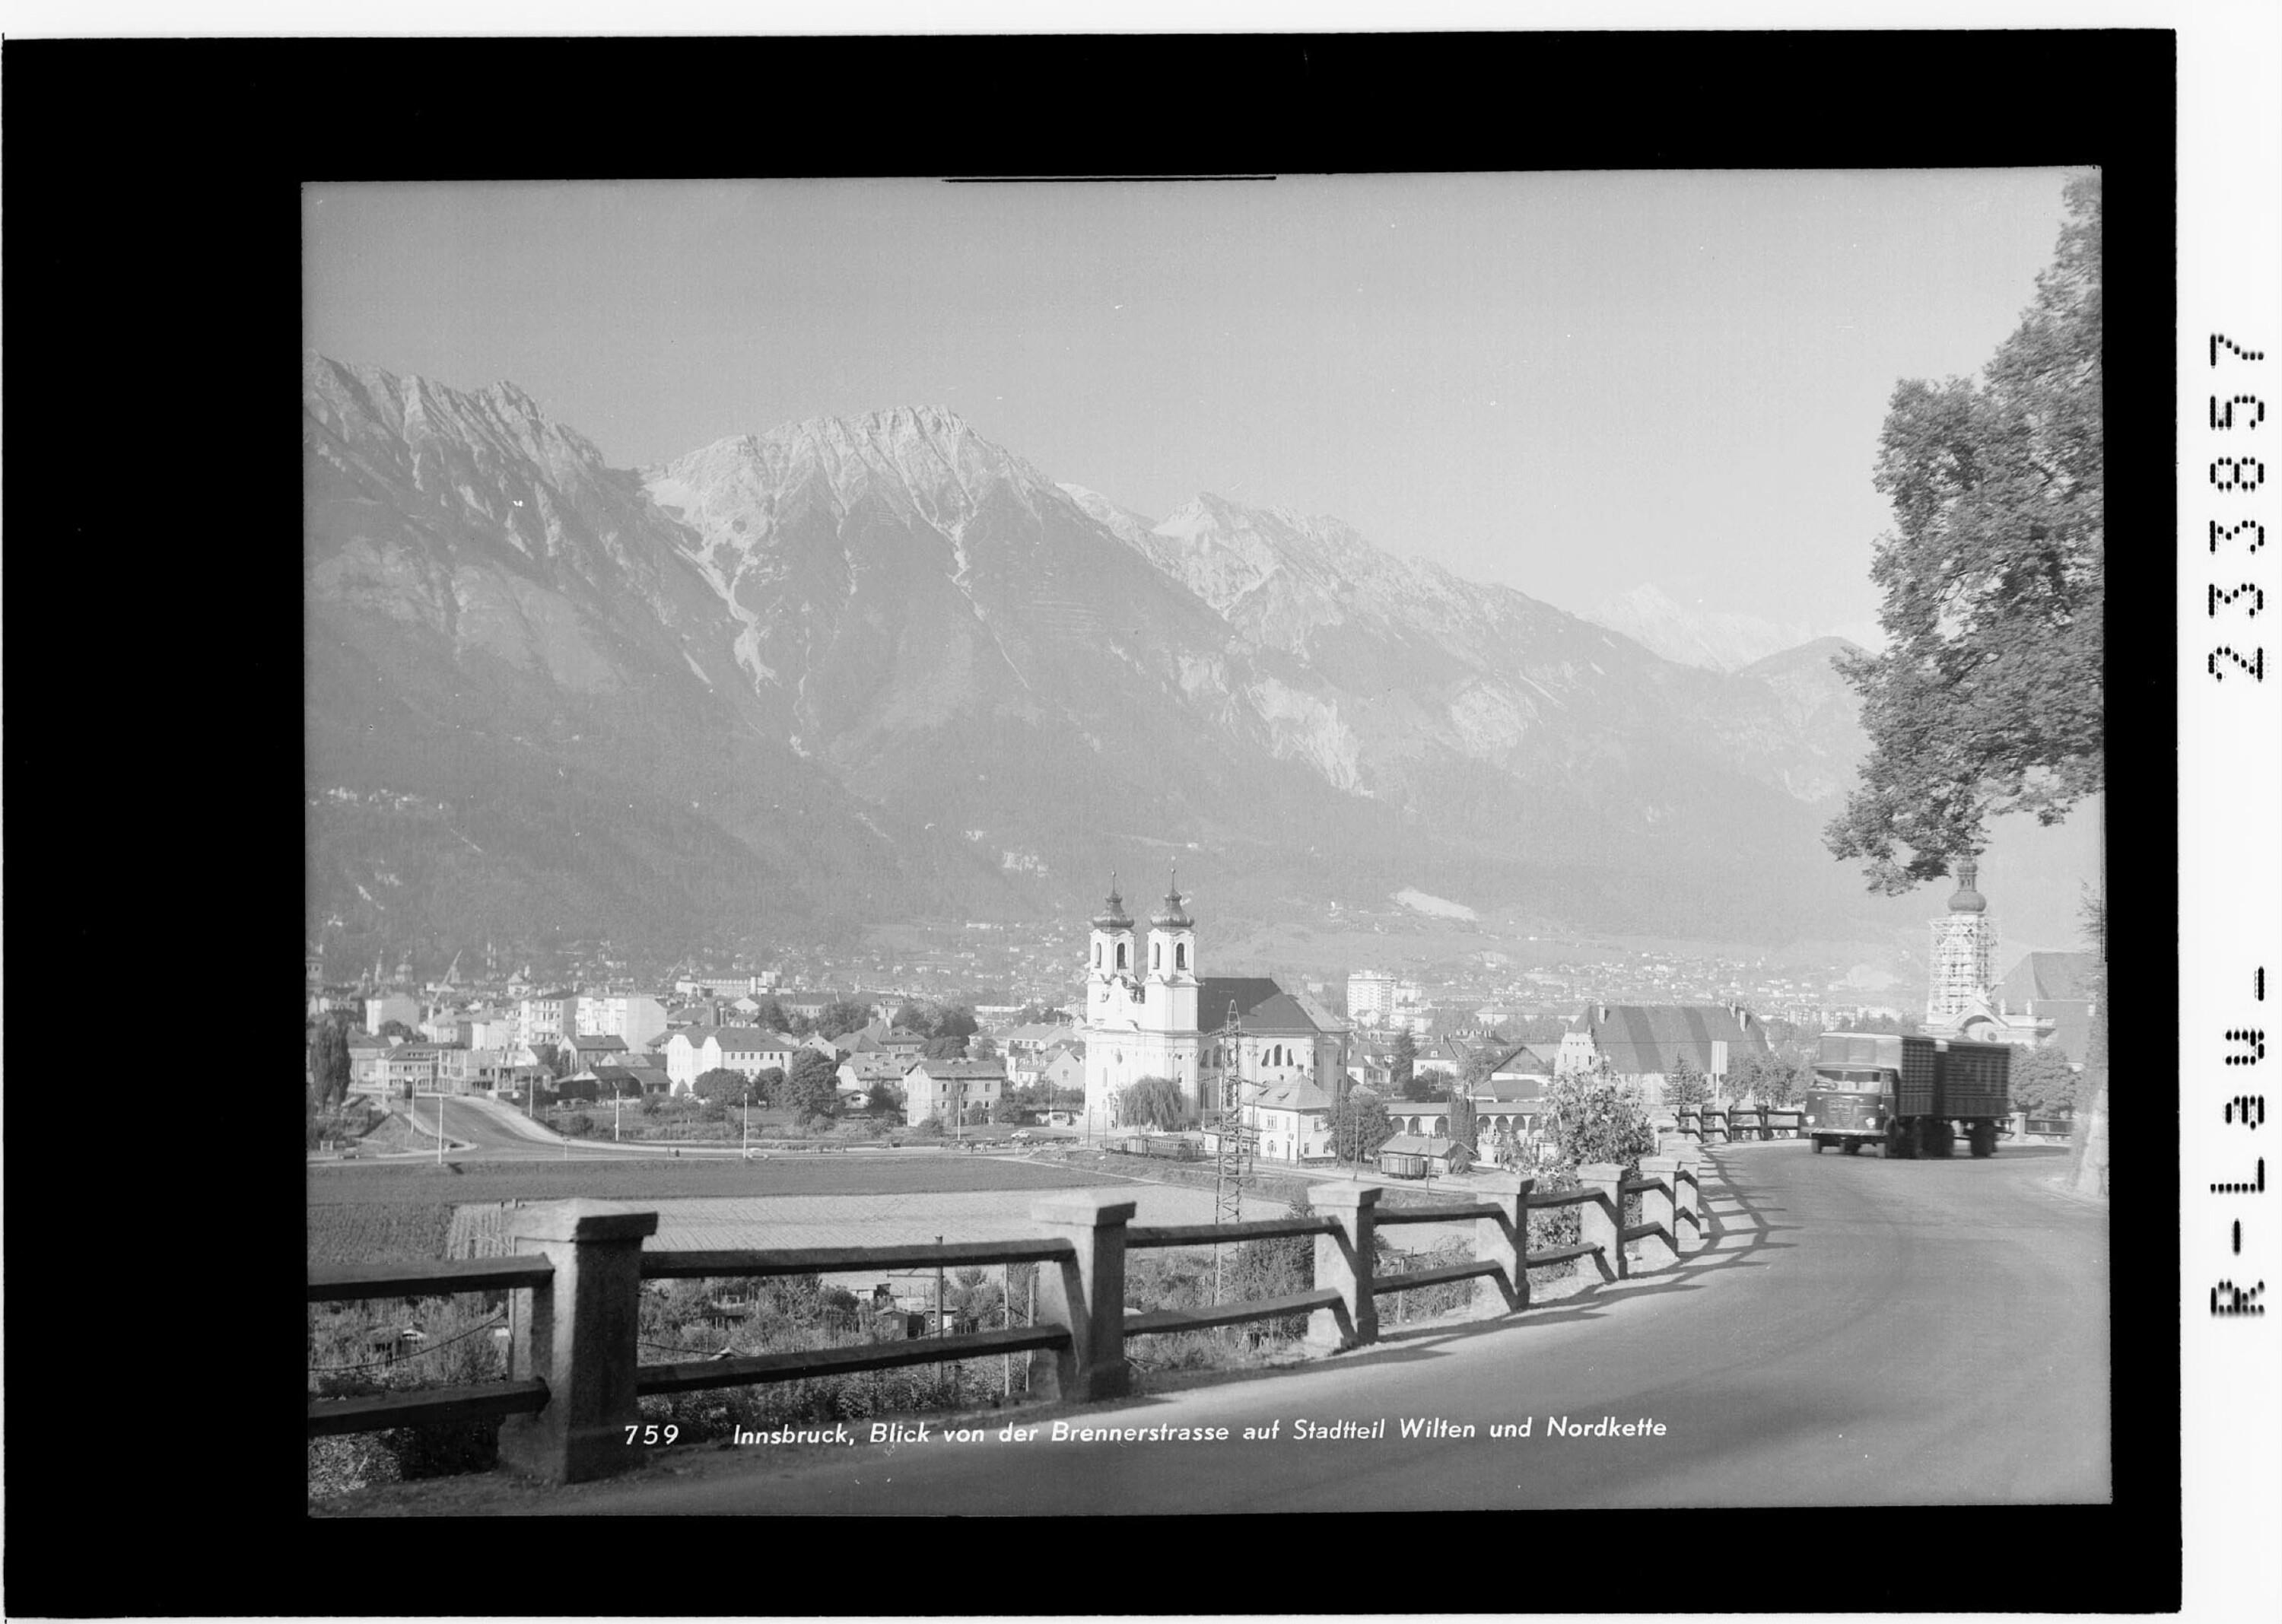 Innsbruck, Blick von der Brennerstrasse auf Stadtteil Wilten und Nordkette></div>


    <hr>
    <div class=